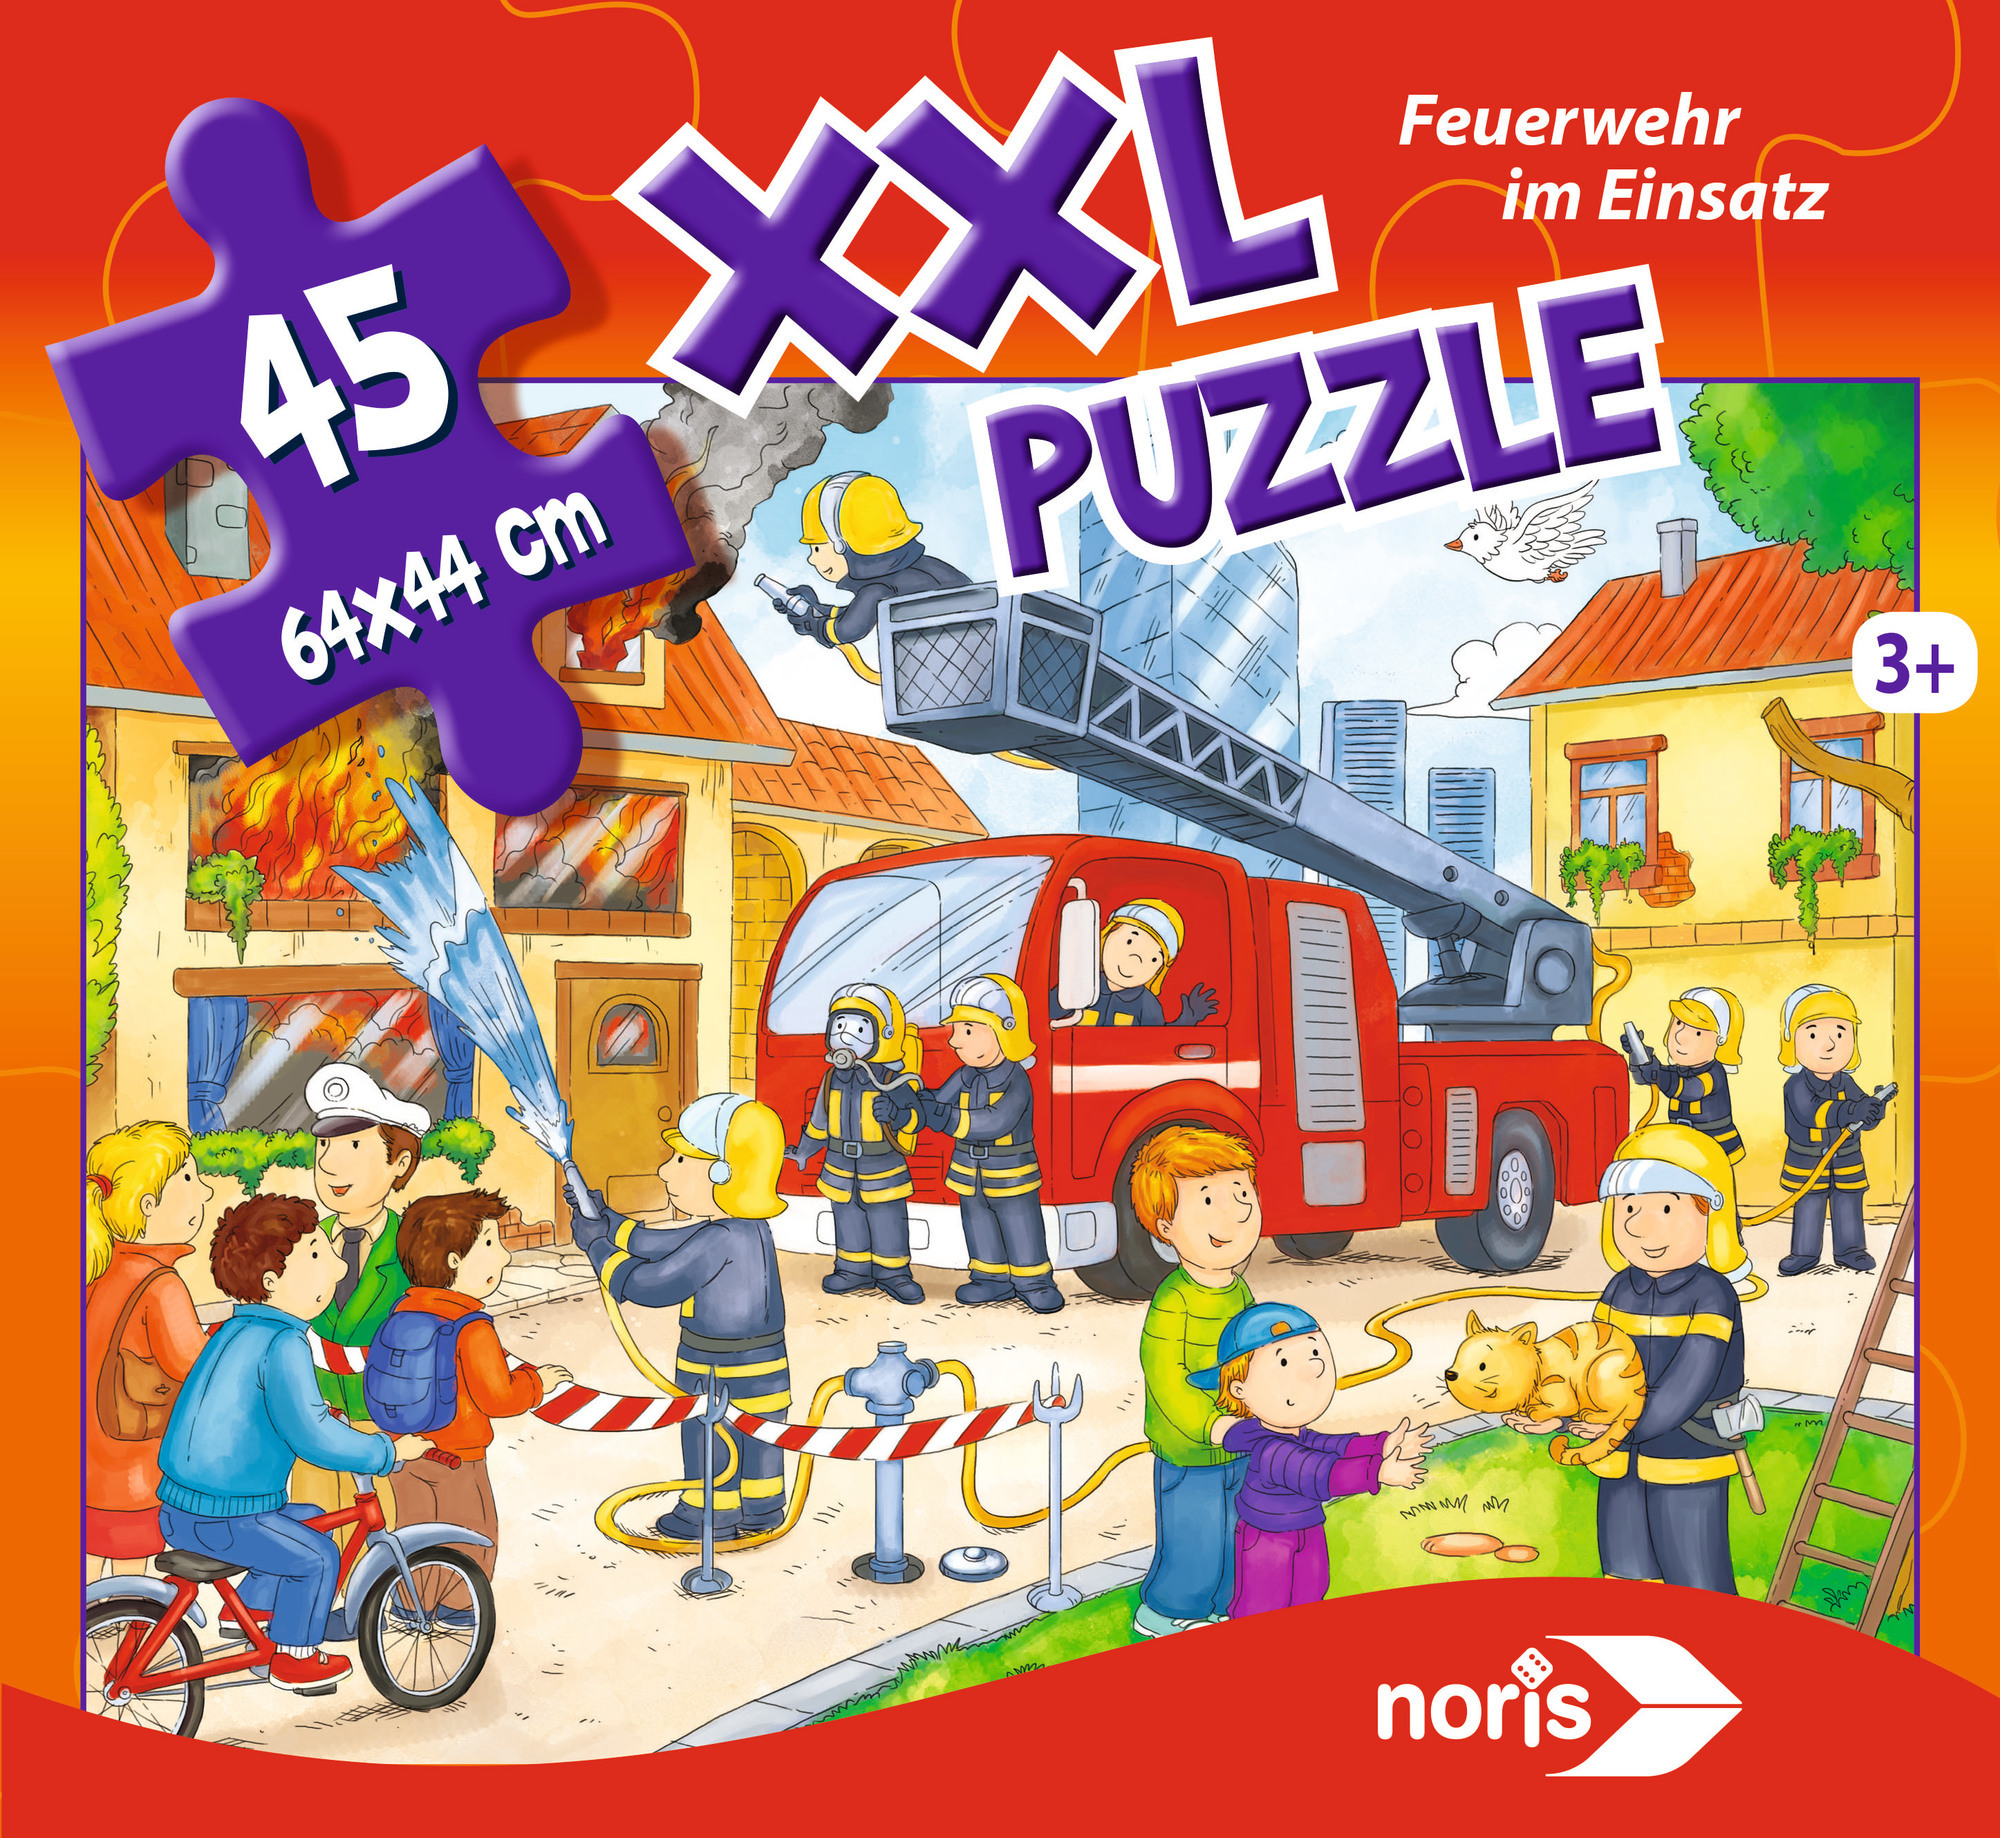 XXL NORIS Mehrfarbig Einsatz Puzzle Feuerwehr im Puzzle